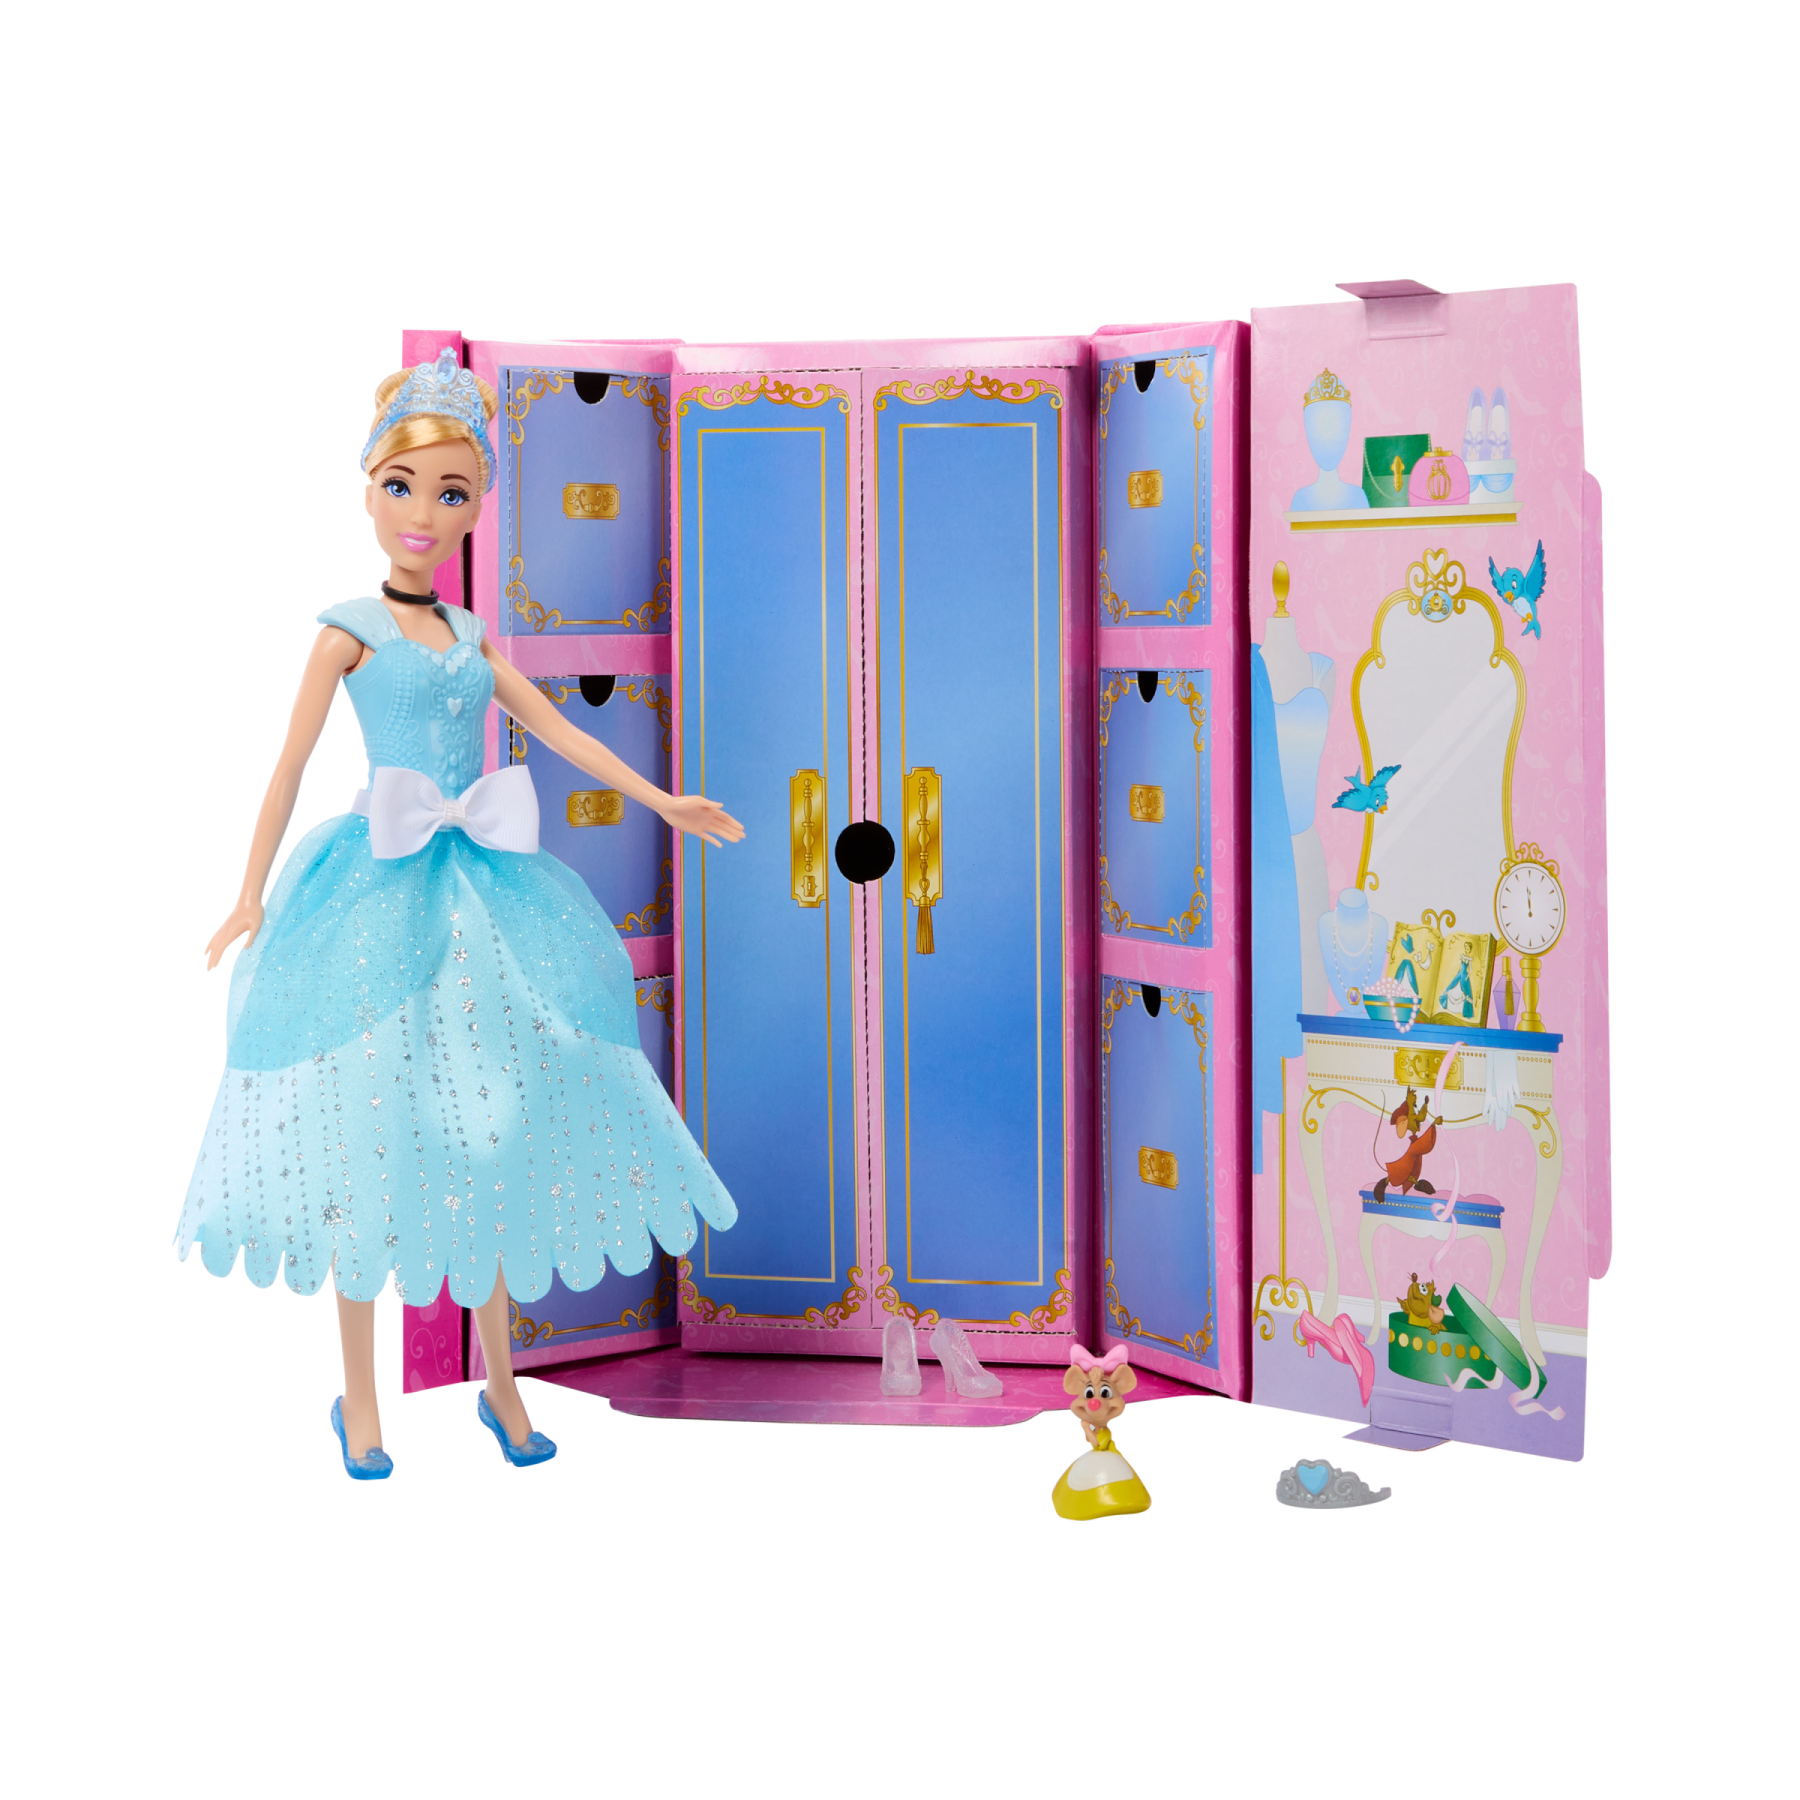 Disney princess - cenerentola royal fashion reveal, bambola con mini personaggio, 12 abiti e accessori a sorpresa inclusi, ispirati ai film disney, 3+ anni, hmk53 - DISNEY PRINCESS